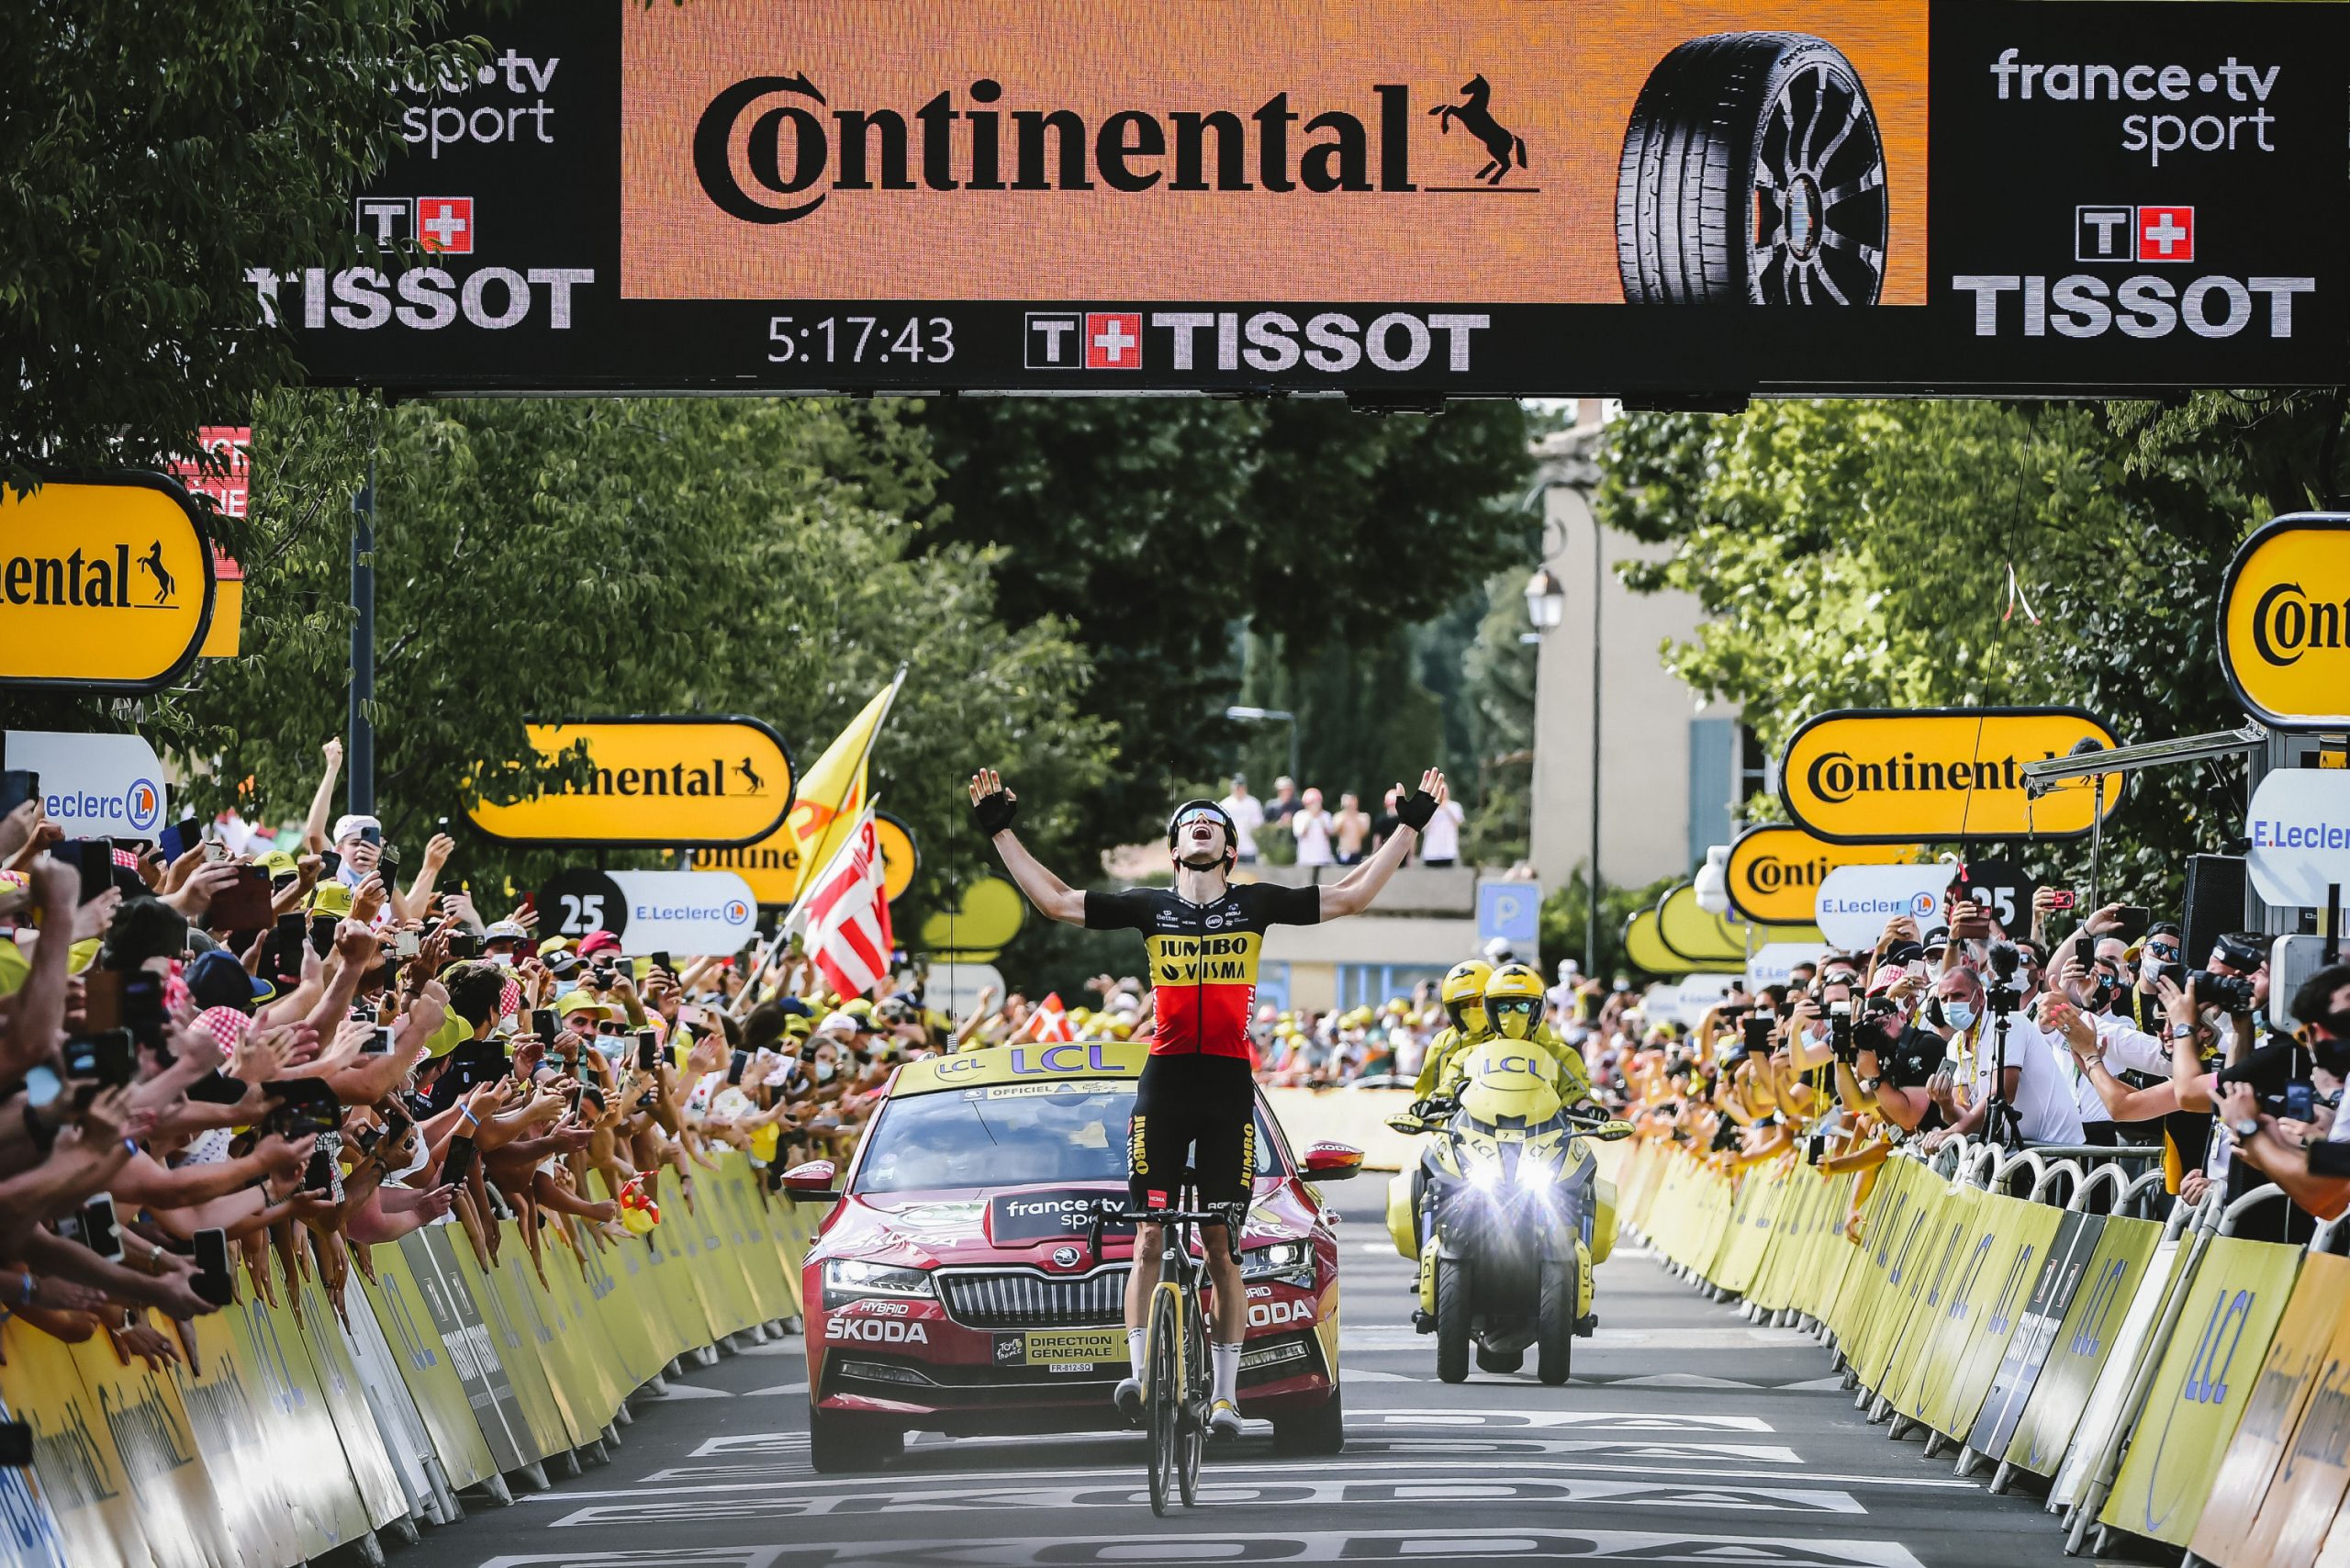 Tour de France 2021: etap 11. Wout van Aert przez Mont Ventoux, Vingegaard uciekł Pogacarowi